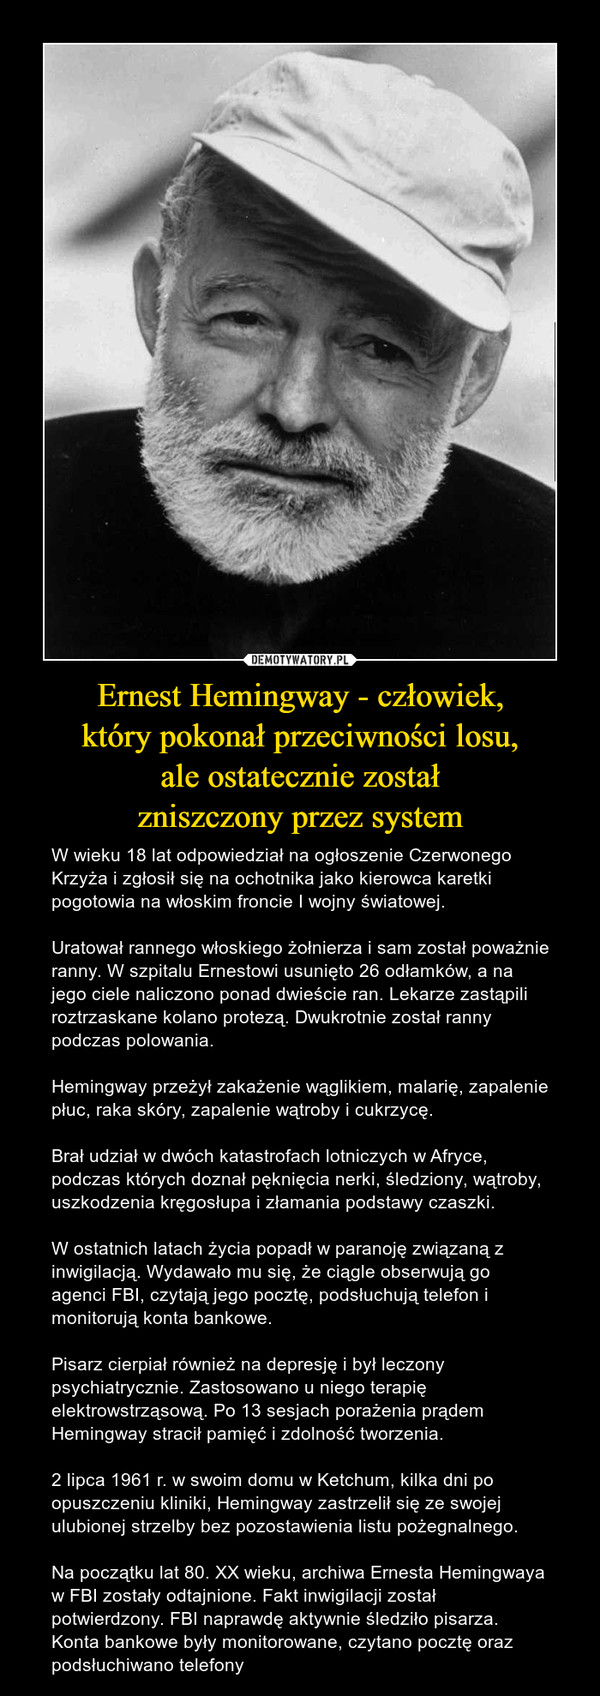 Ernest Hemingway - człowiek,
który pokonał przeciwności losu,
ale ostatecznie został
zniszczony przez system